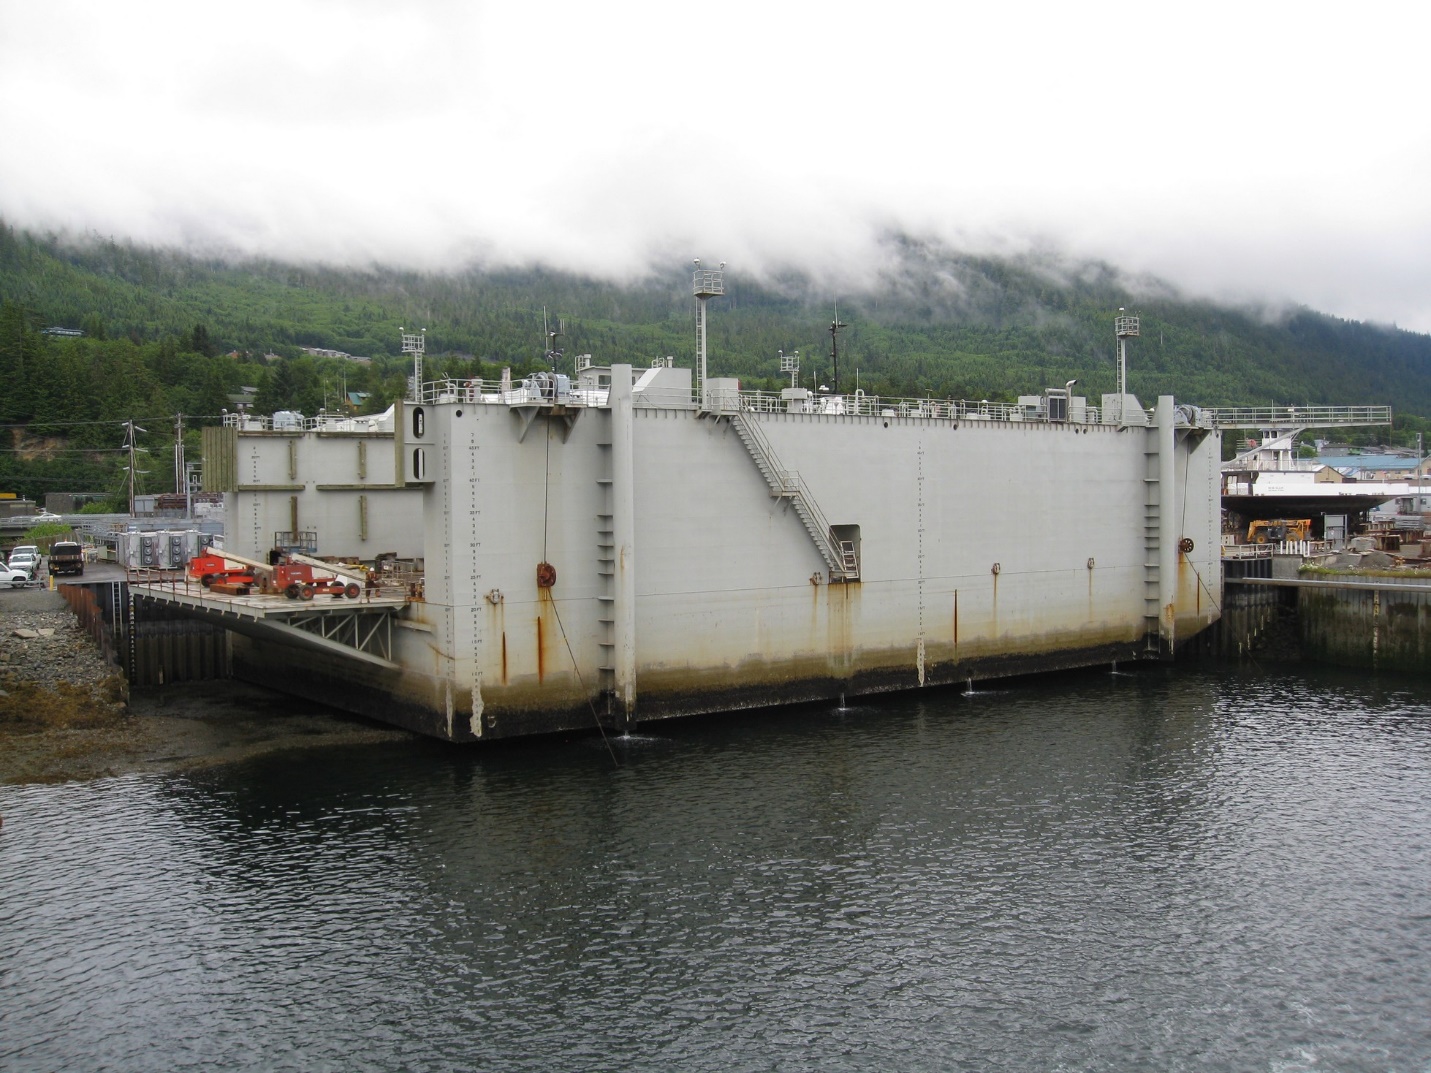 Alaska 36000 long ton floating transfer dock shown landed on grid at low tide